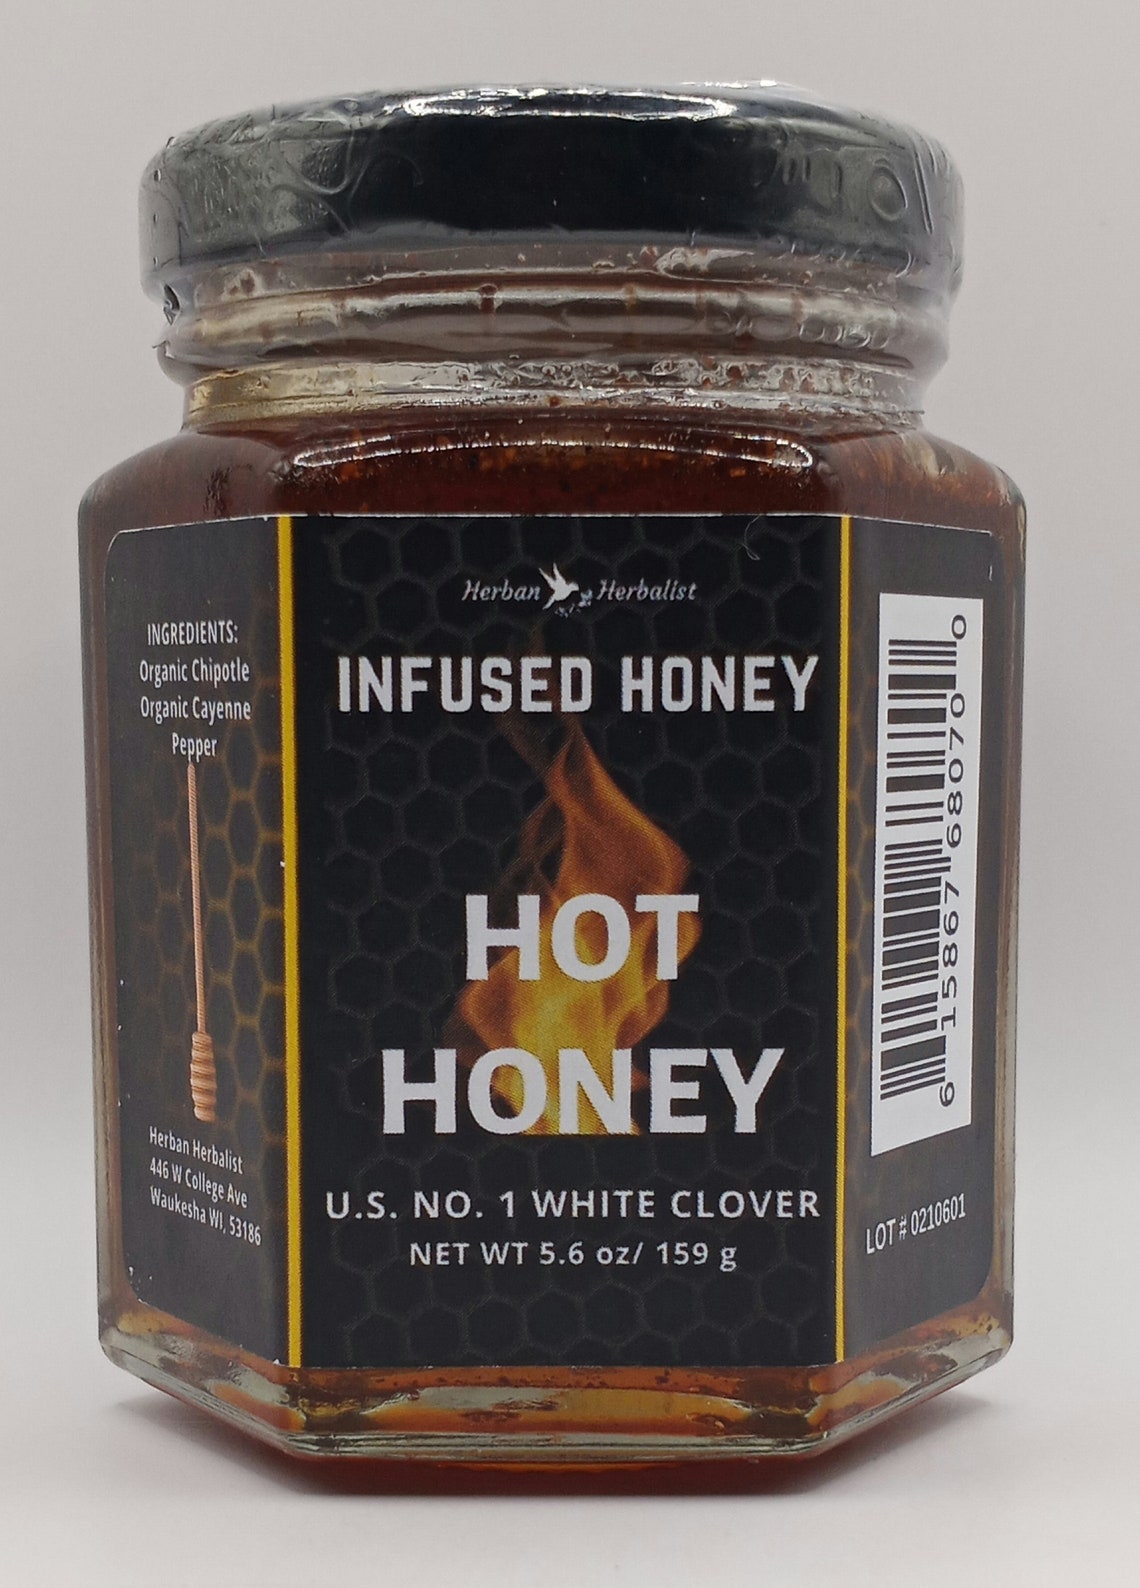 Hot Infused Honey, Cayenne Infused Honey, Chipotle Infused Honey - Etsy